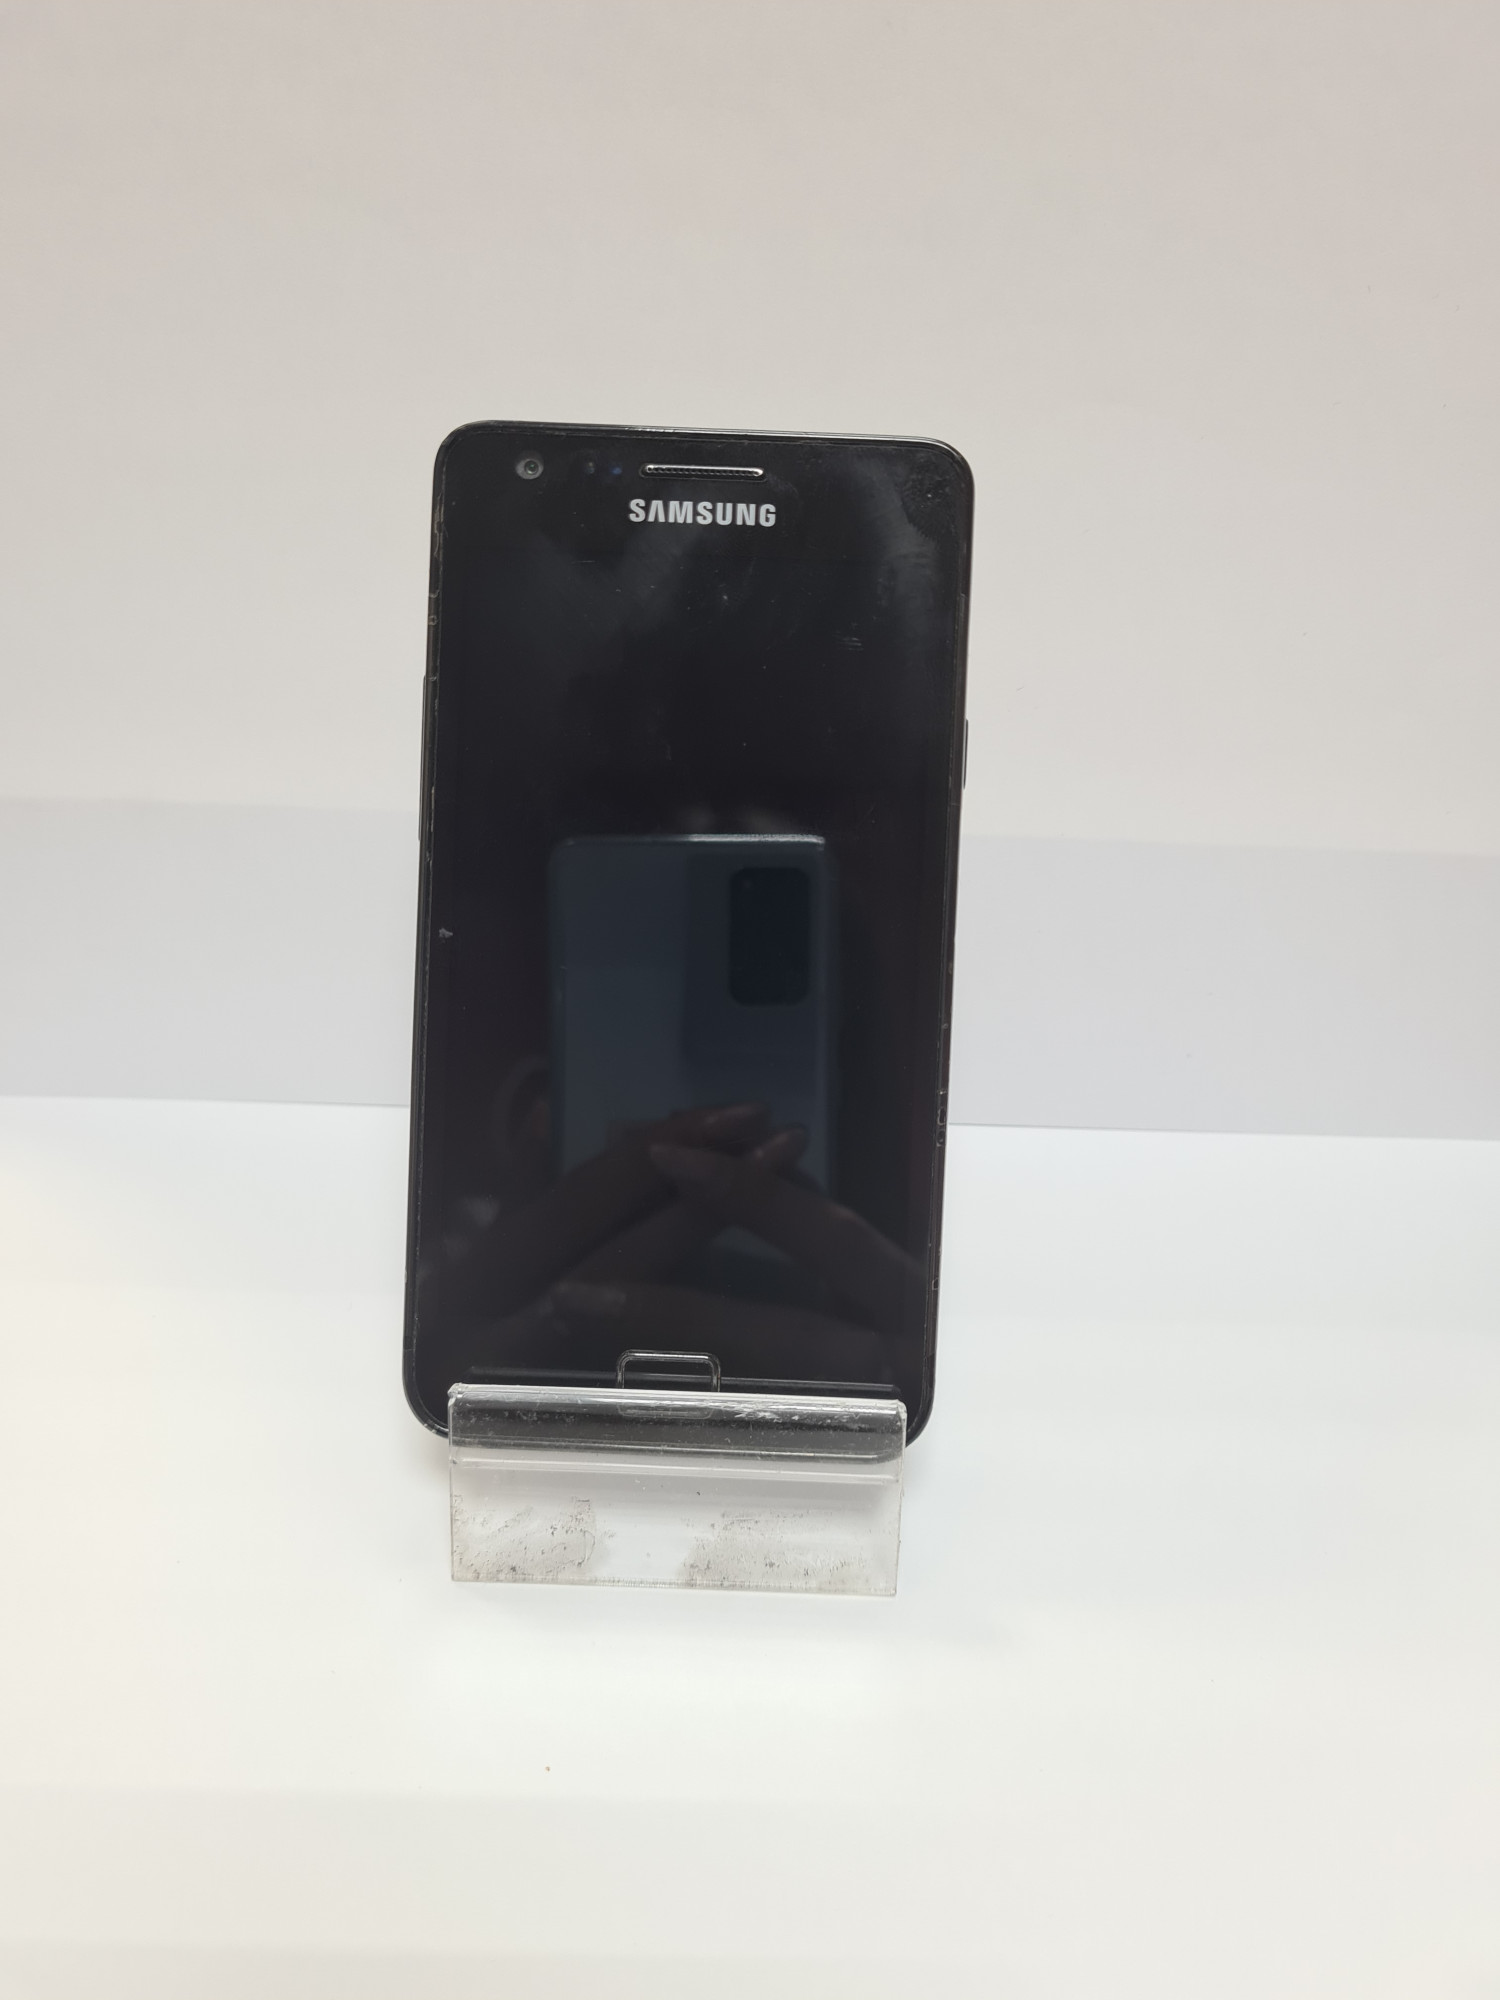 Samsung Galaxy S2 (GT-I9100) 1/16Gb  4